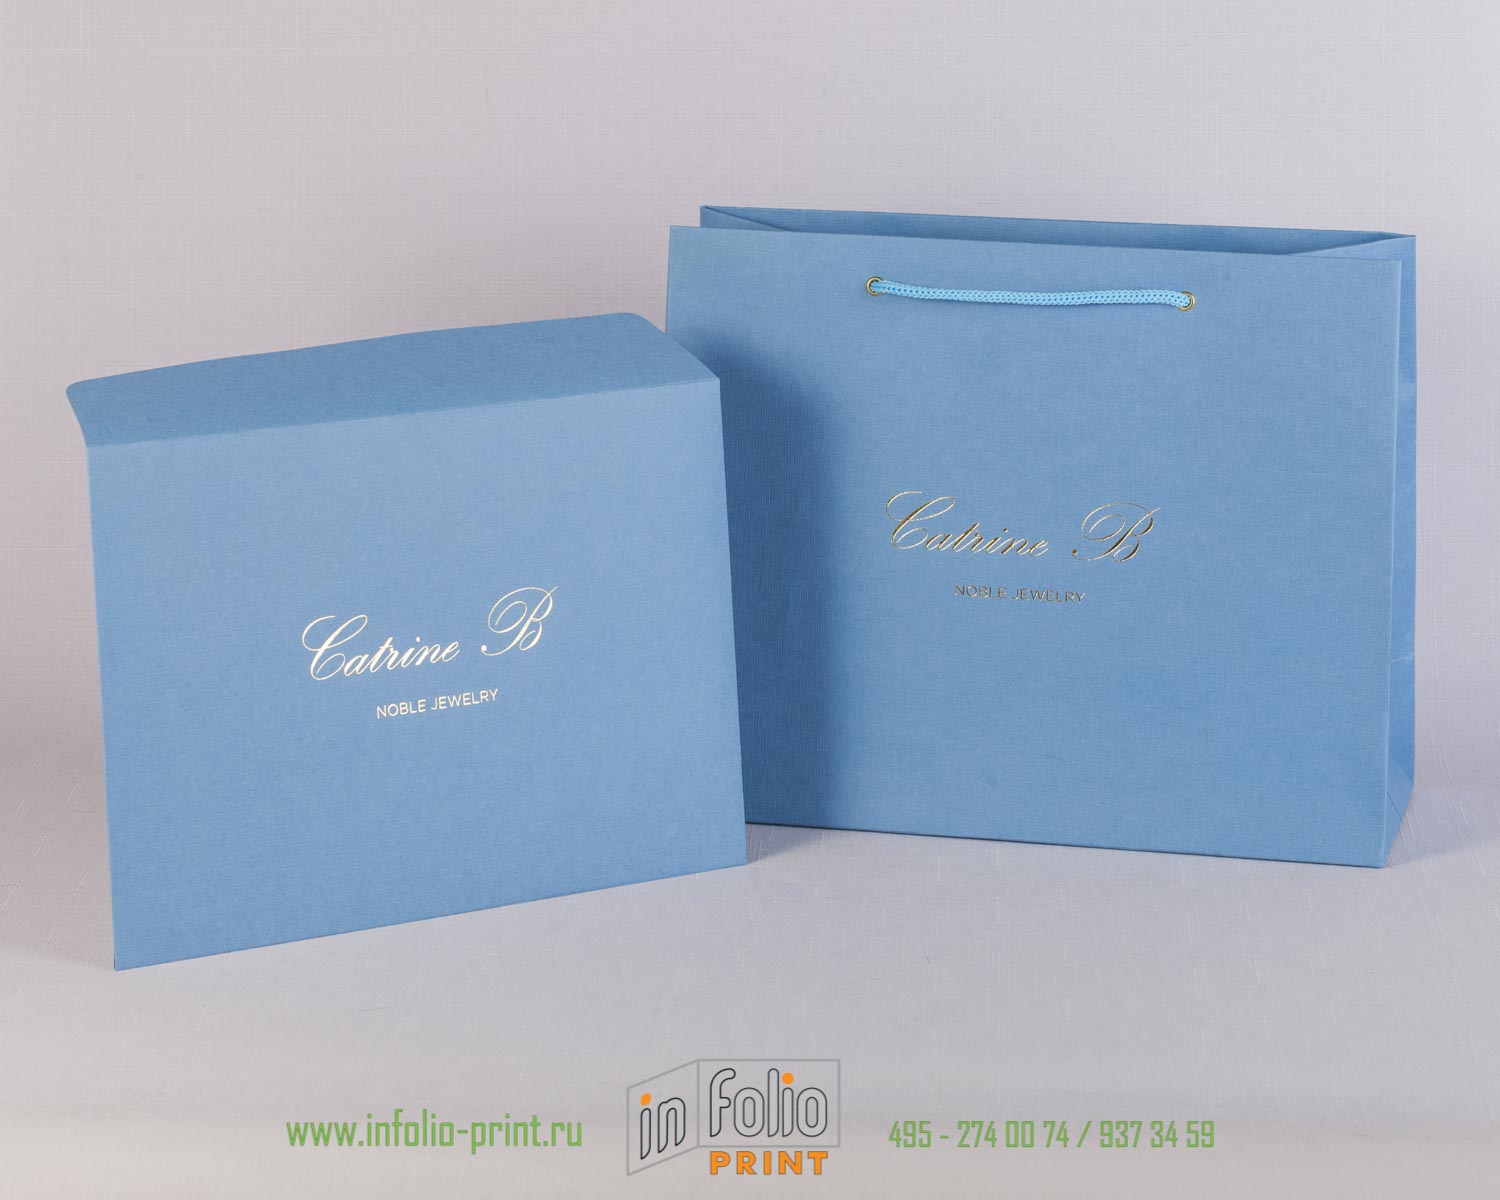 Голубой пакет из дизайнерской бумаги и конверт с серебряным тиснением